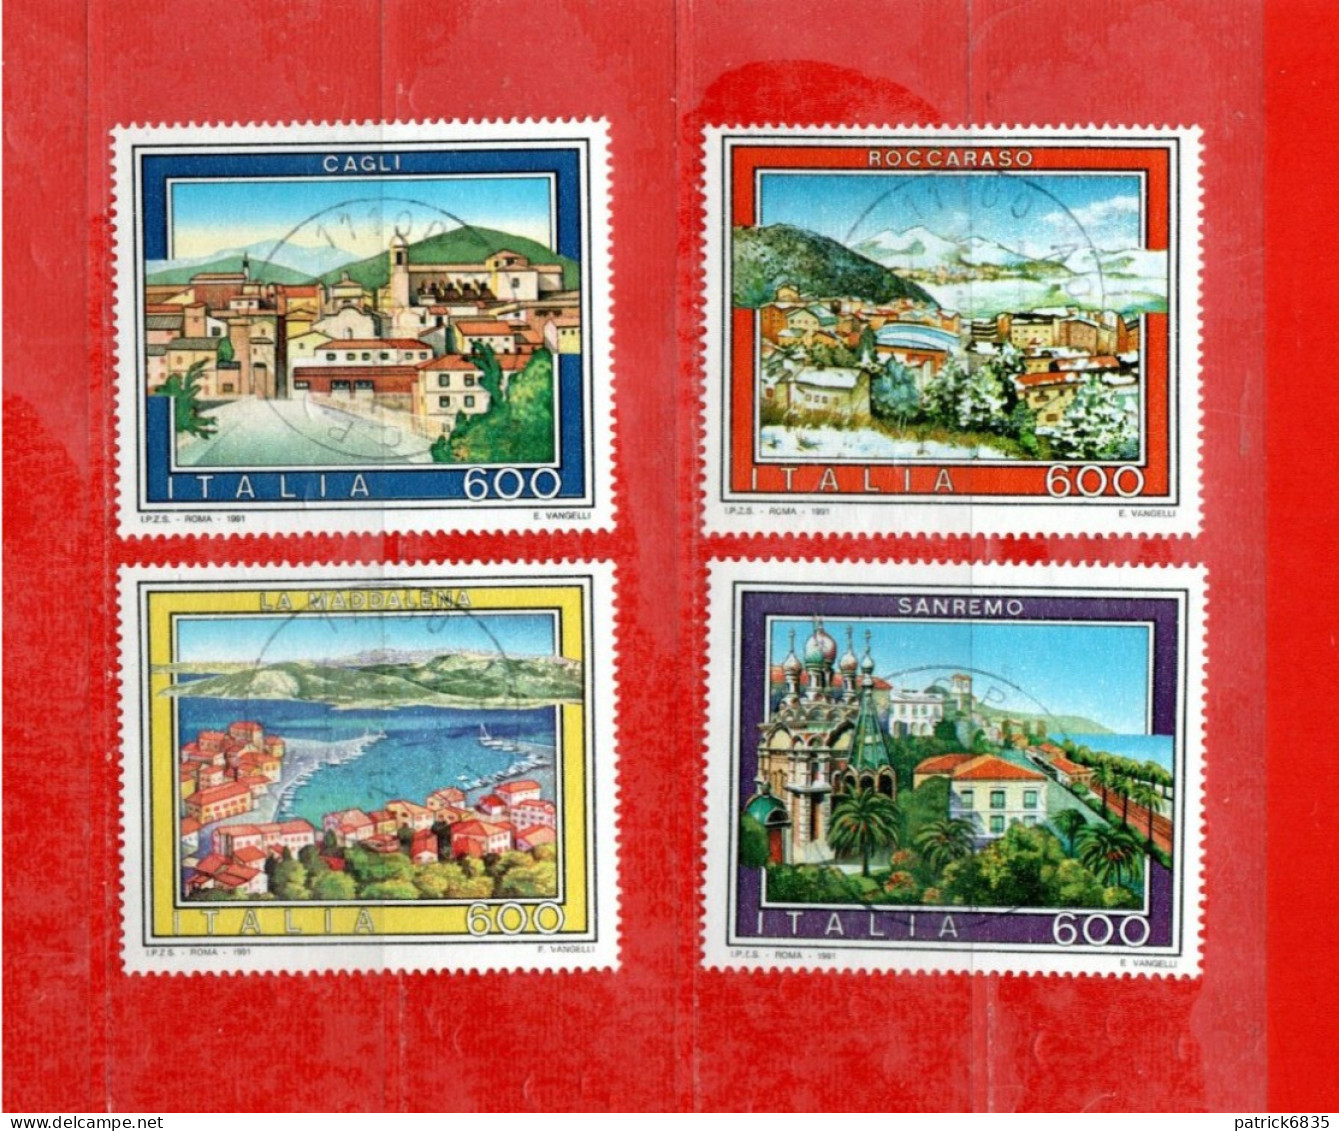 (Fr) Italia ° -1991 - TURISTICA, Sanremo-Cagli-Roccaraso-La Maddalena. Unif. 1972 à 1975.  LUSSO - 1991-00: Usati